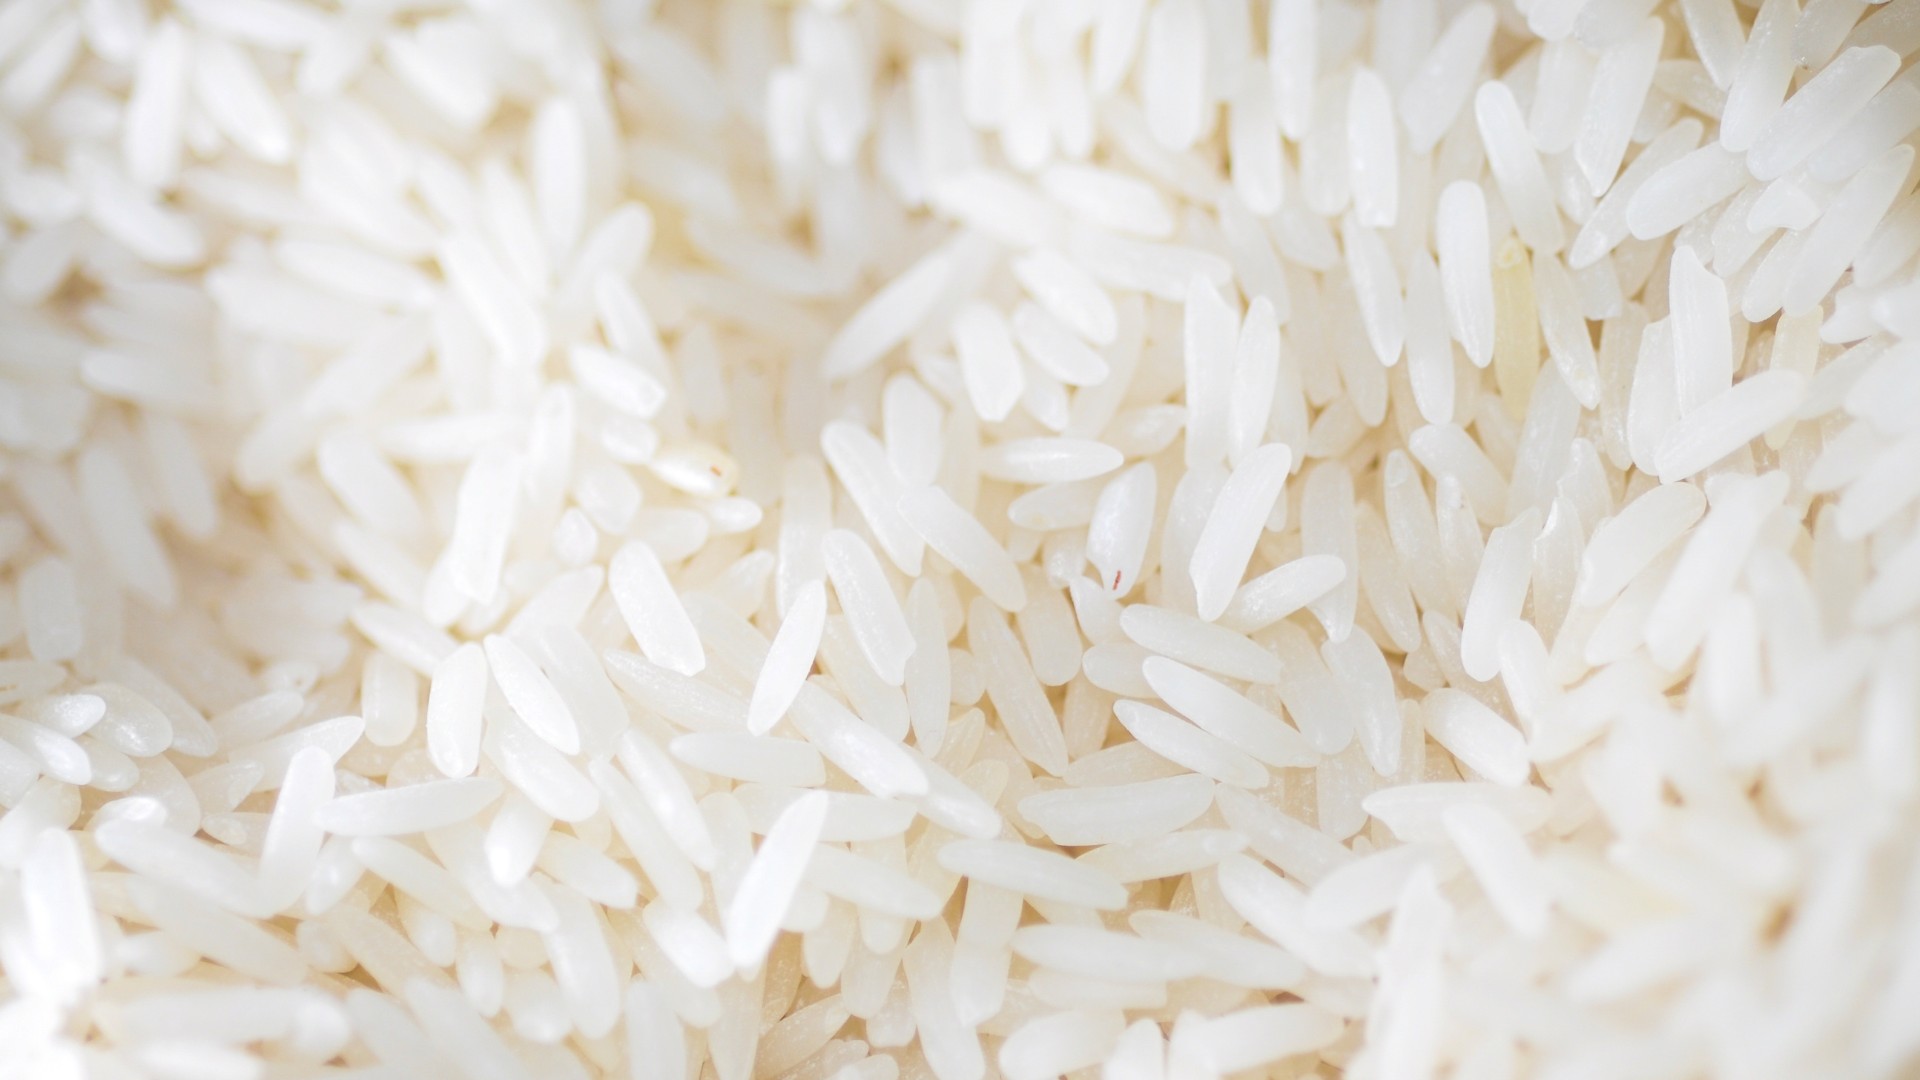 Veja histórico do preço do arroz desde 2014 e saiba por que ele ficou tão caro